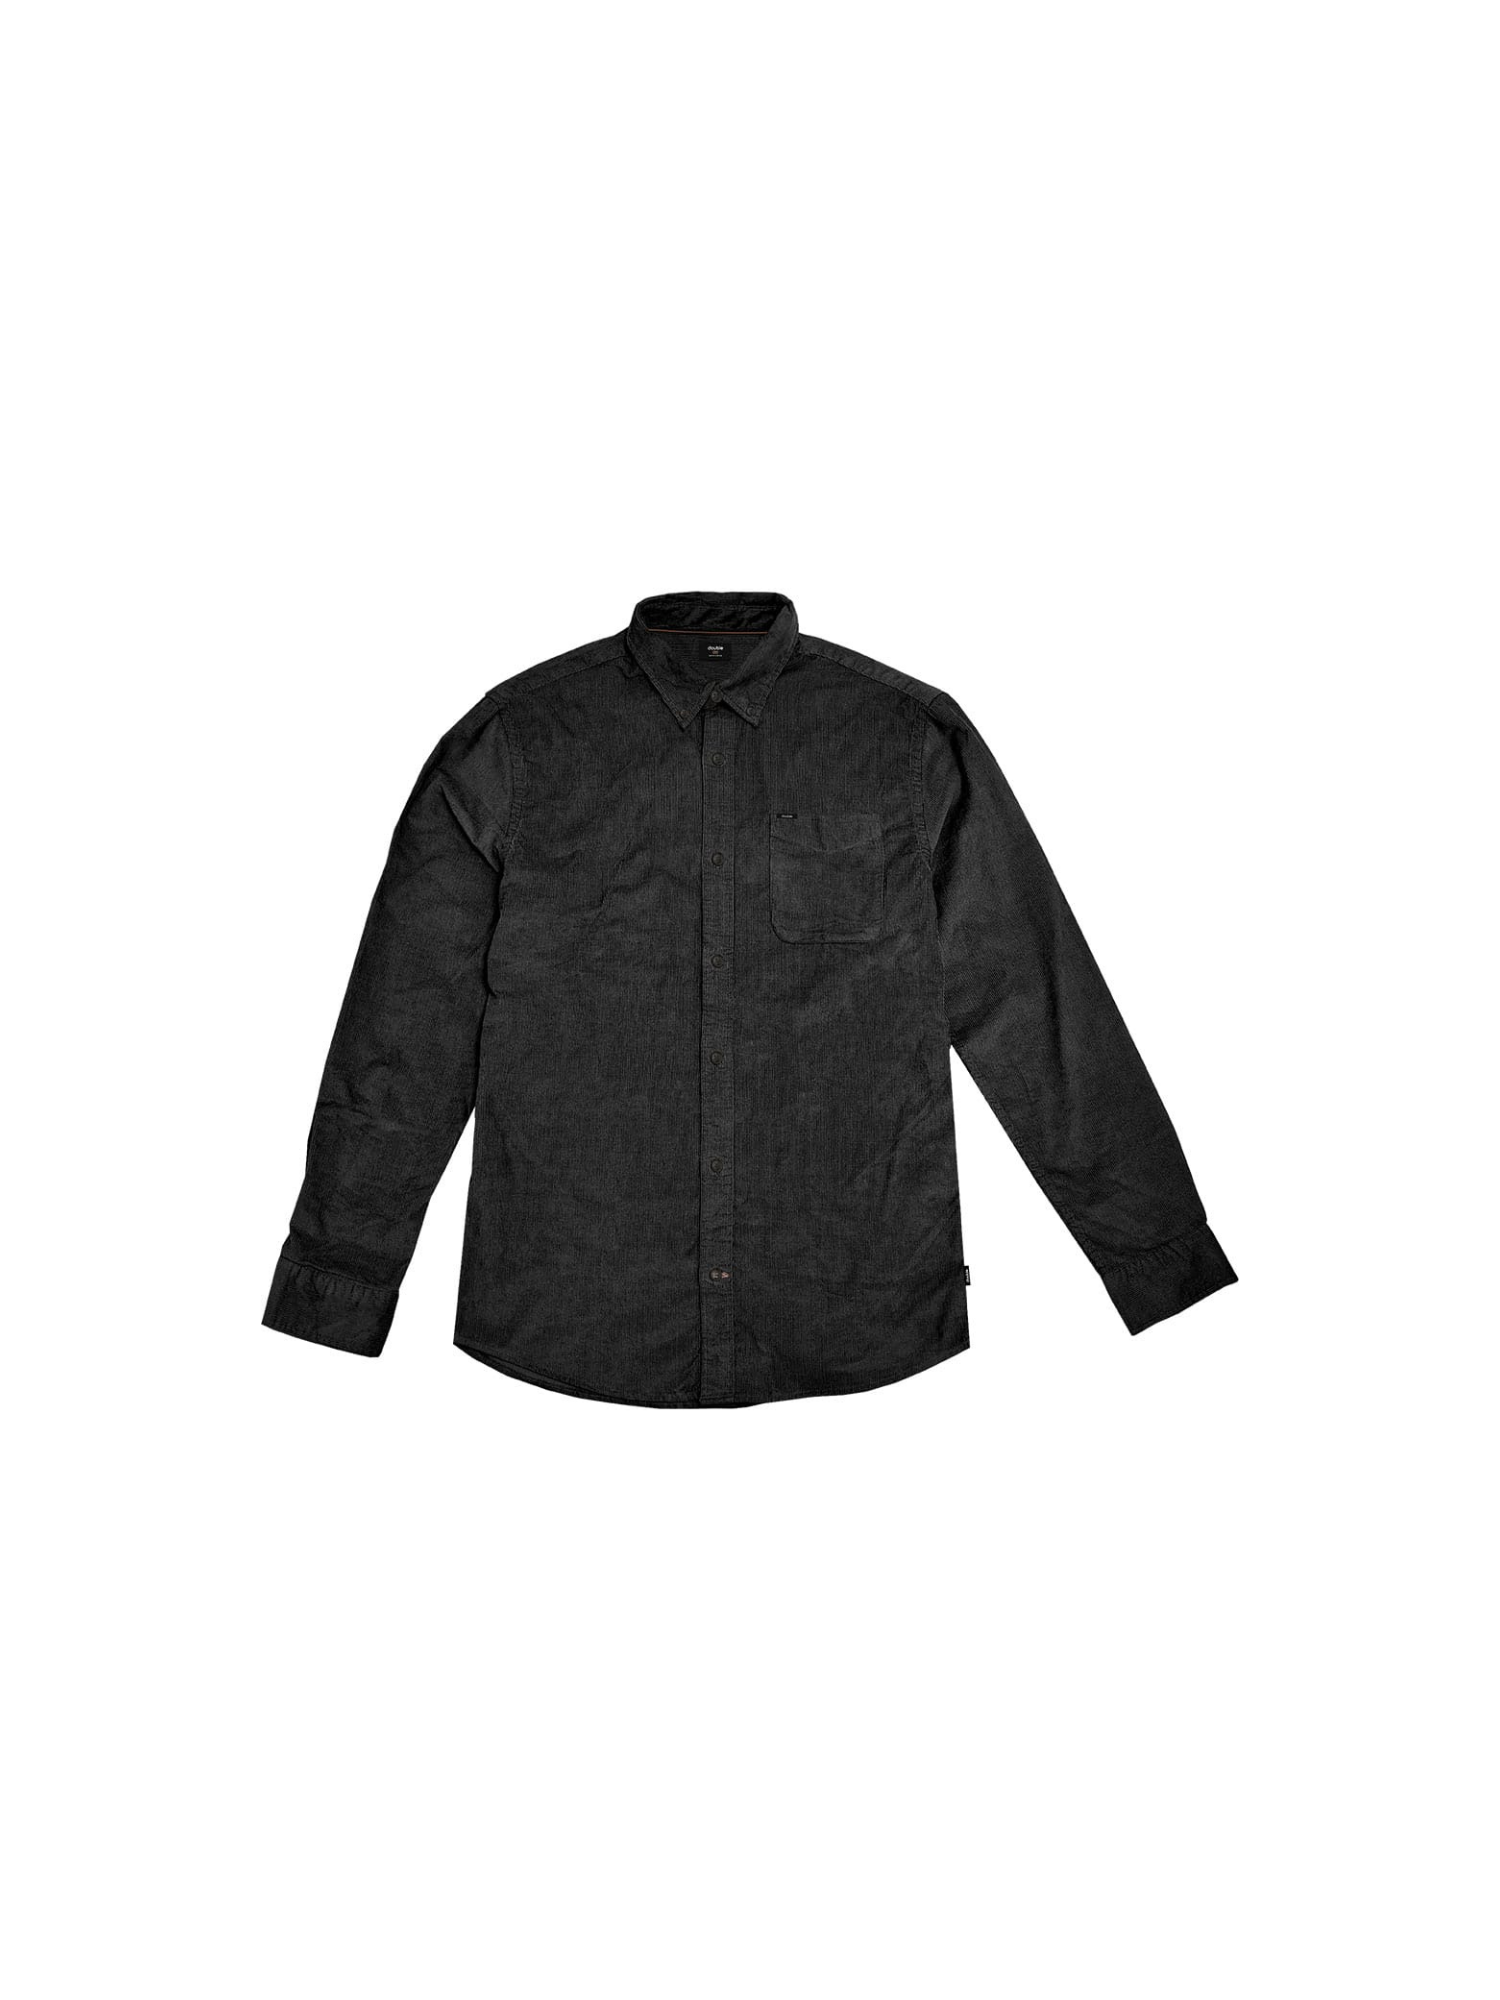 Ανδρικό Πουκάμισο Corduroy Long Sleeve Plus Size - Μαύρο